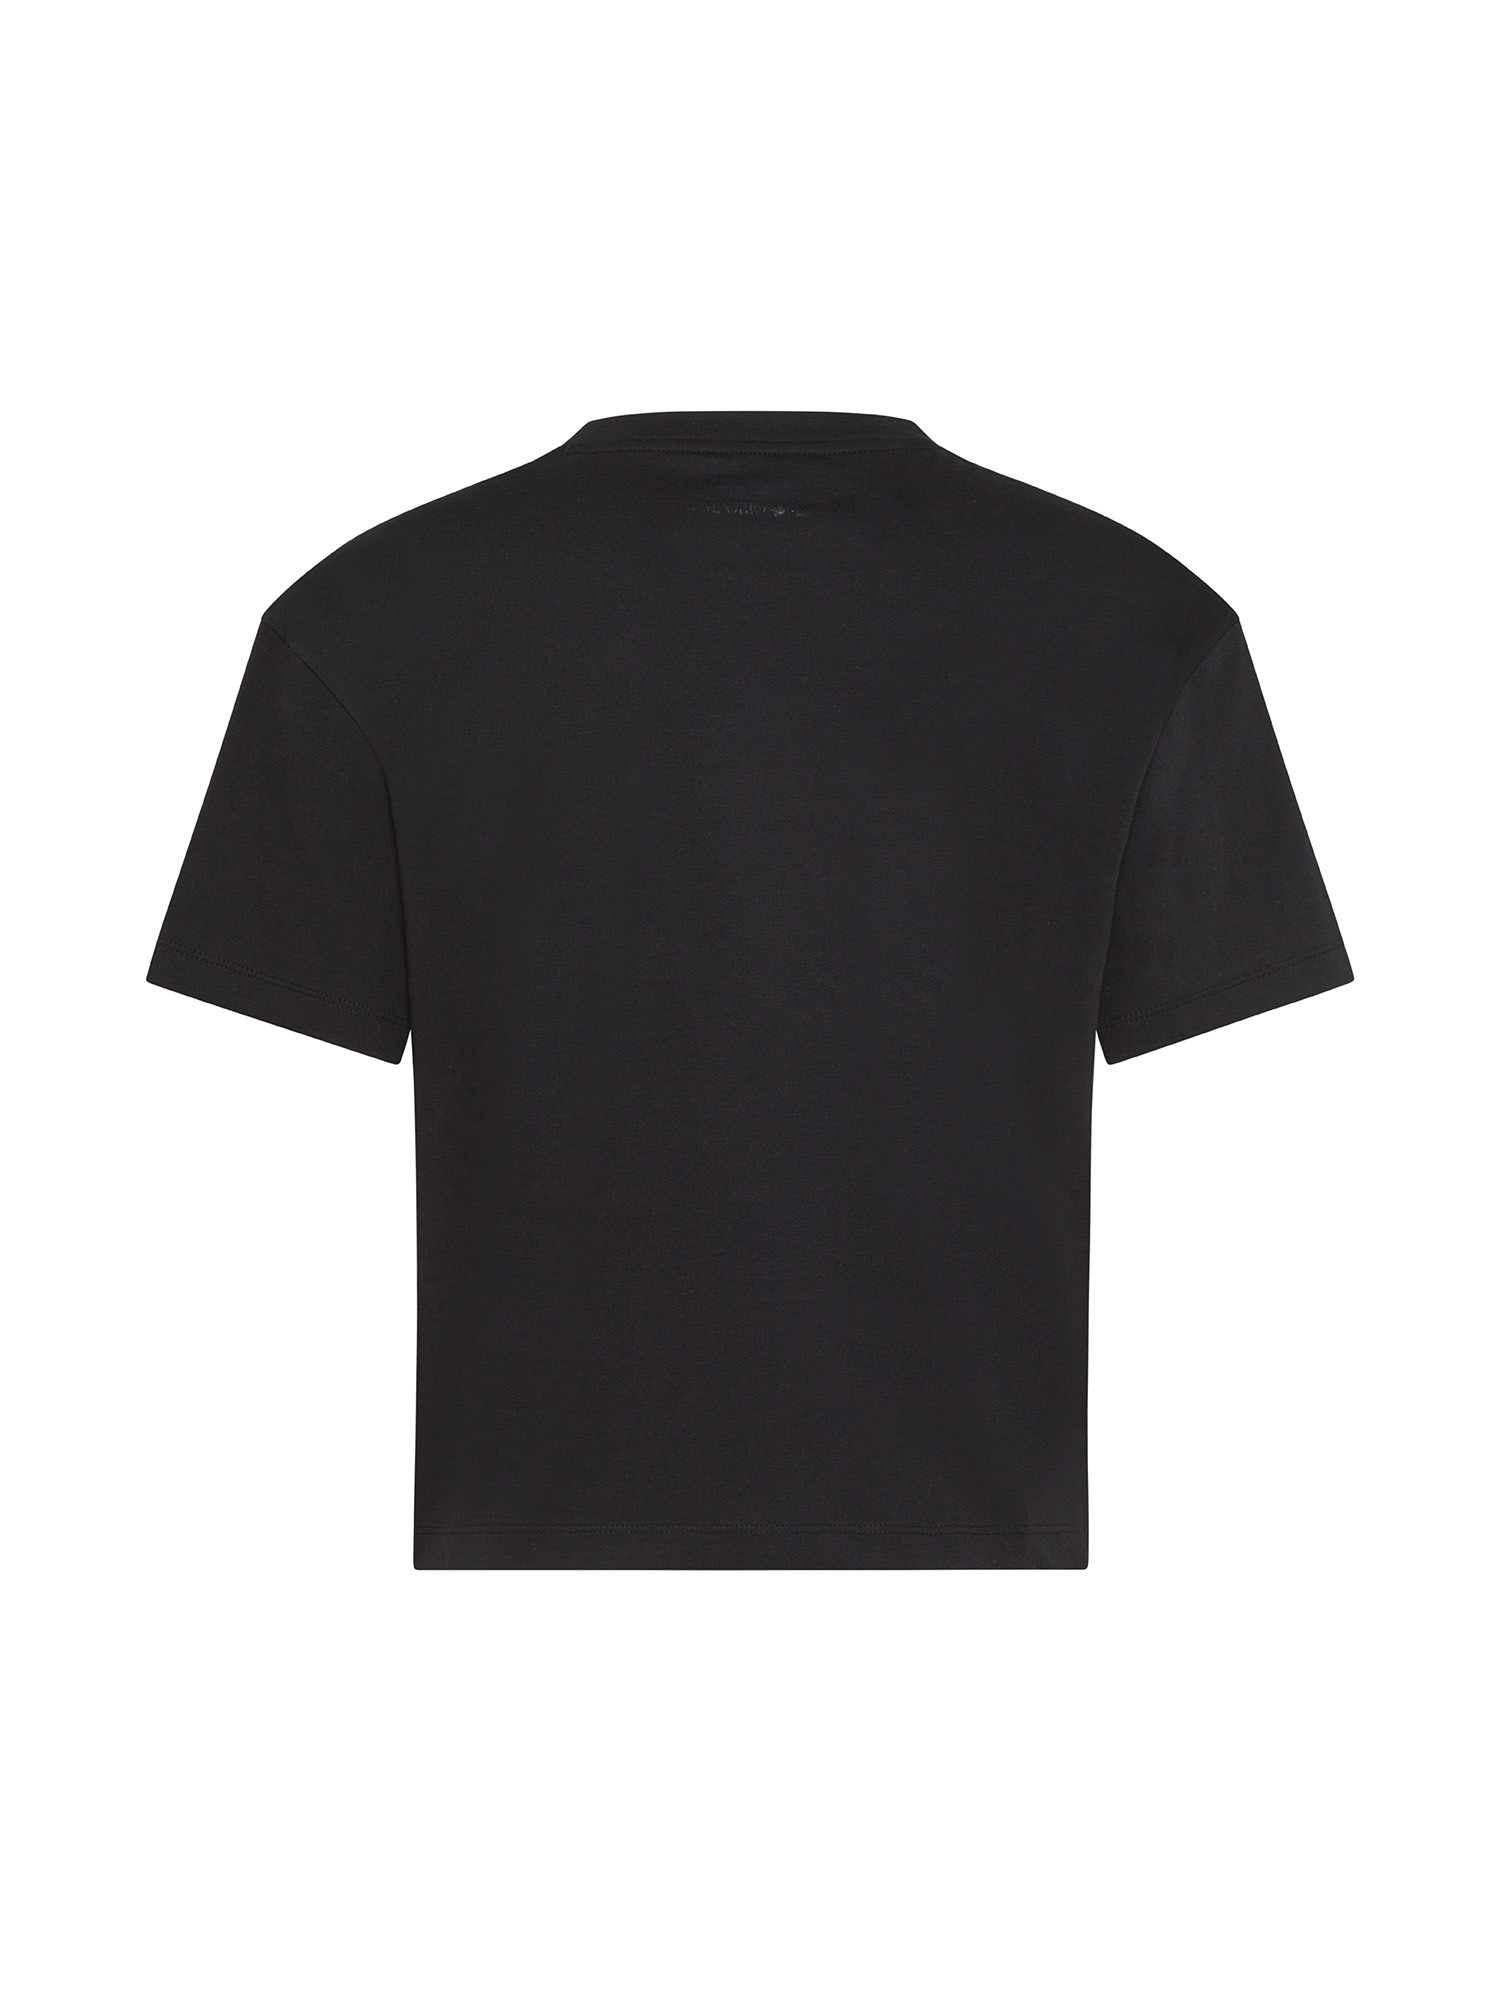 Emporio Armani - T-shirt in cotone con stampa e logo, Nero, large image number 1